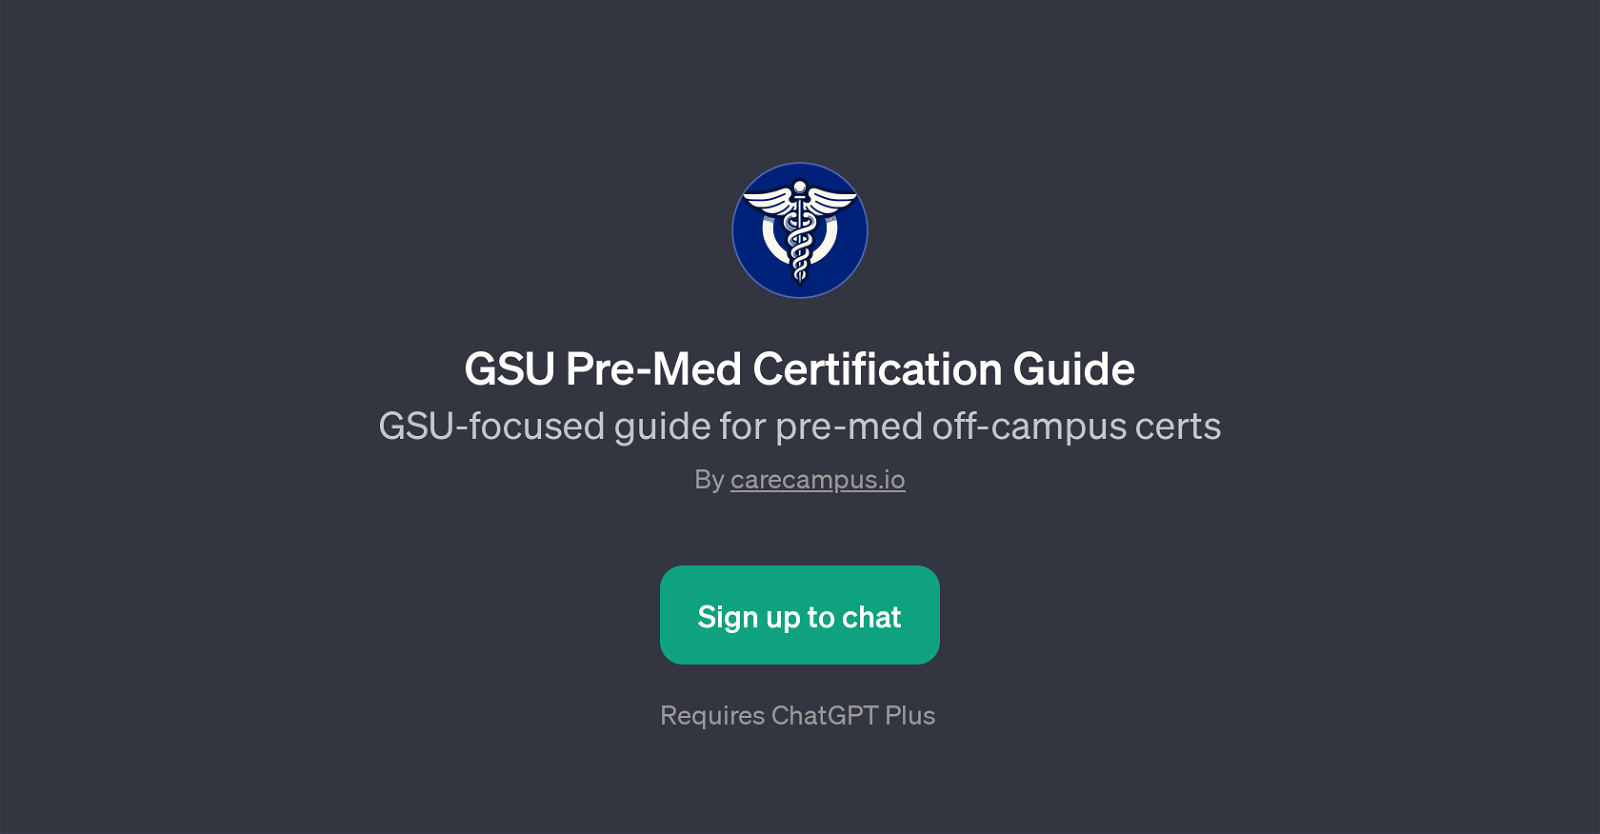 GSU Pre-Med Certification Guide website